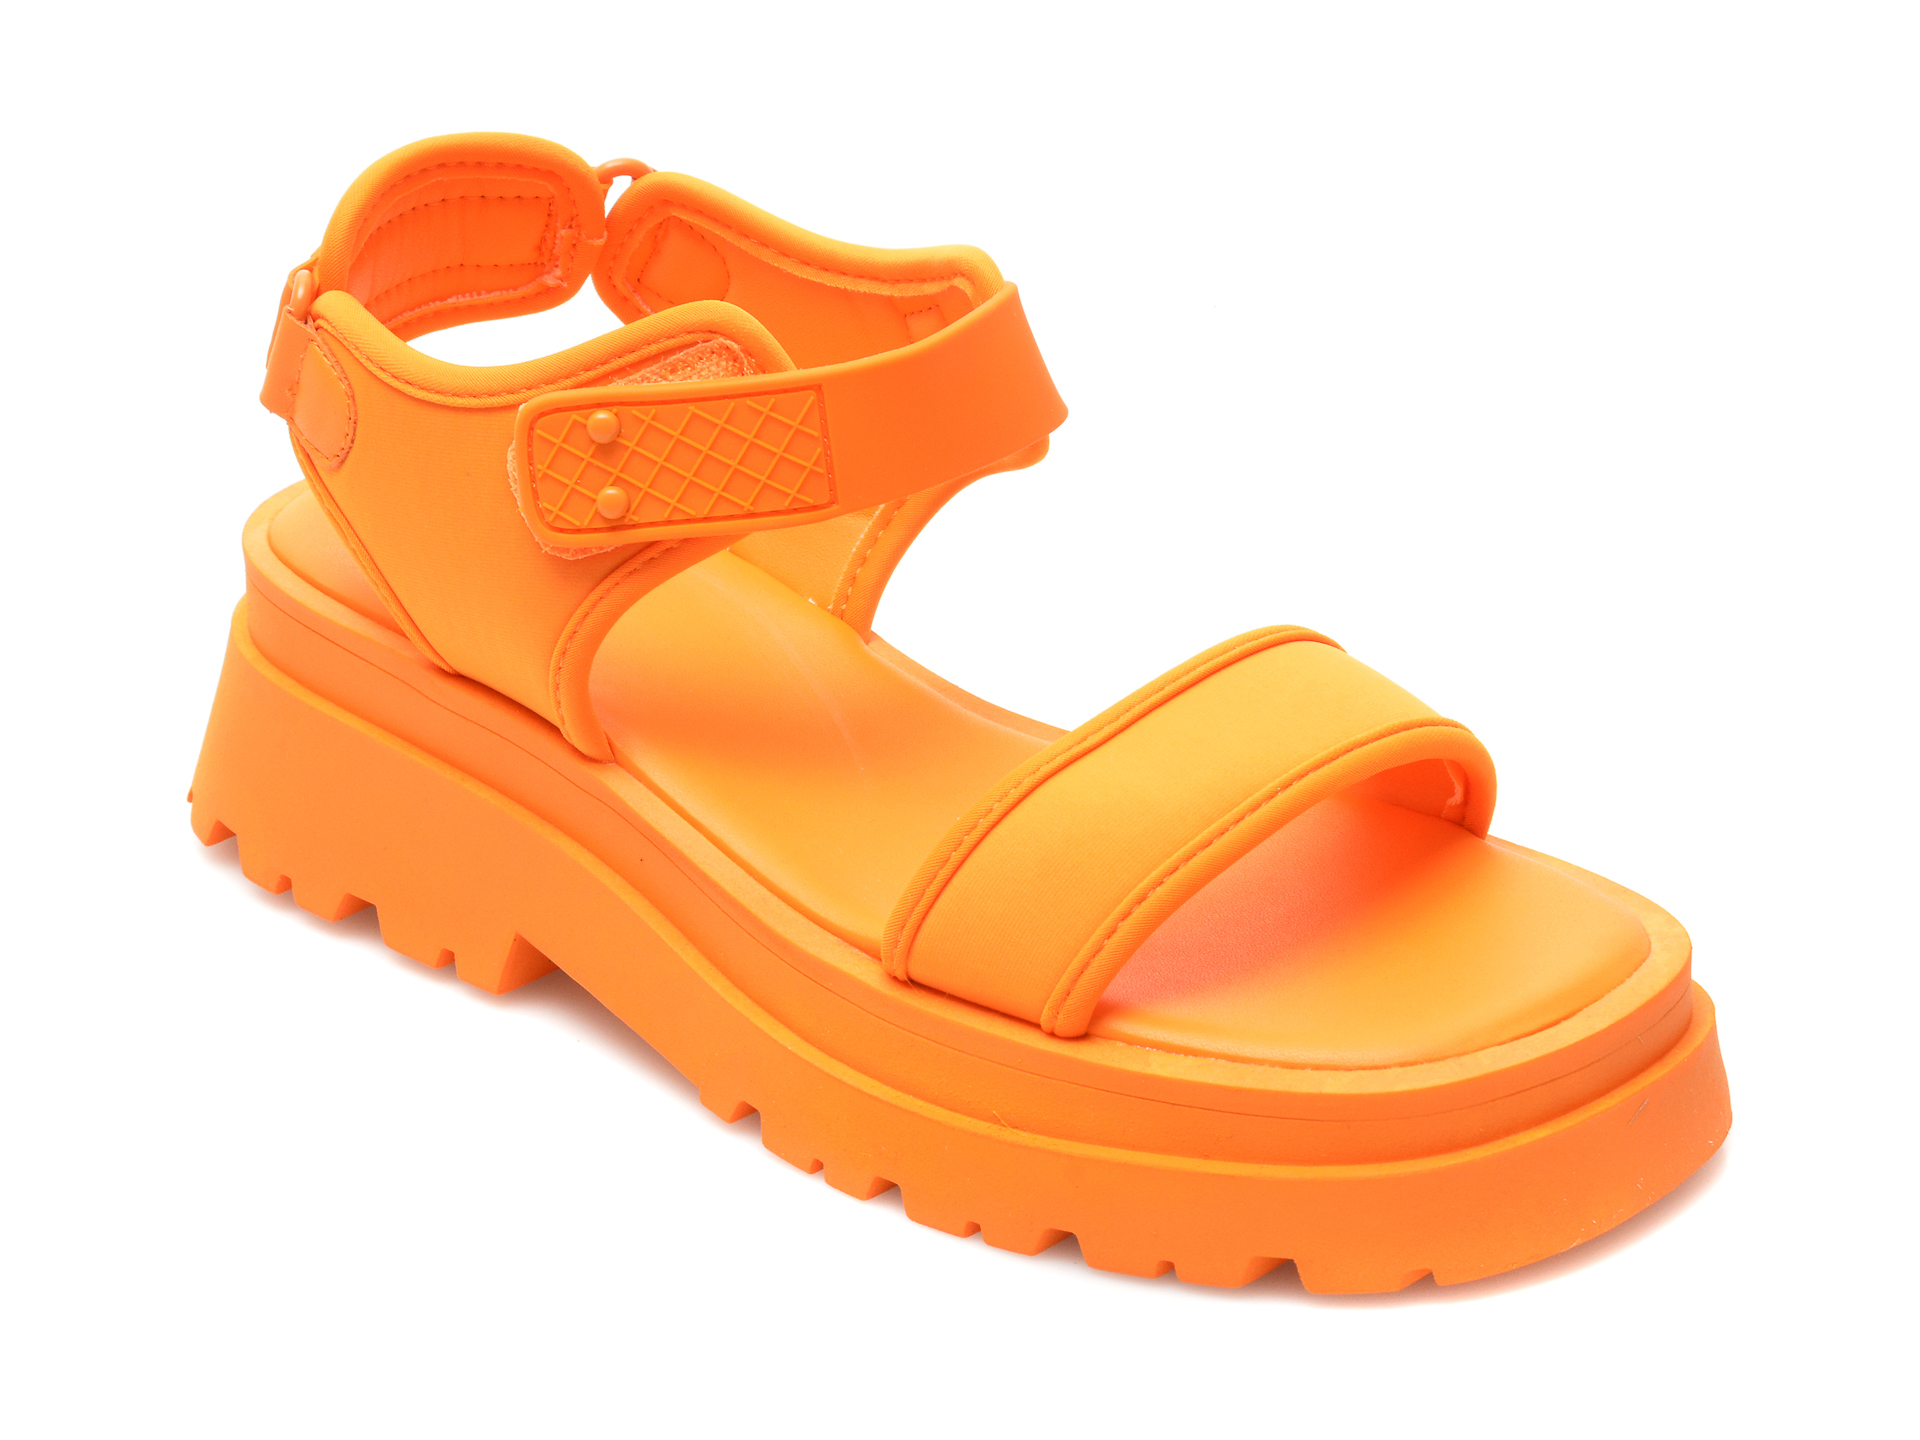 Sandale ALDO portocalii, CENDRIX800, din material textil Aldo